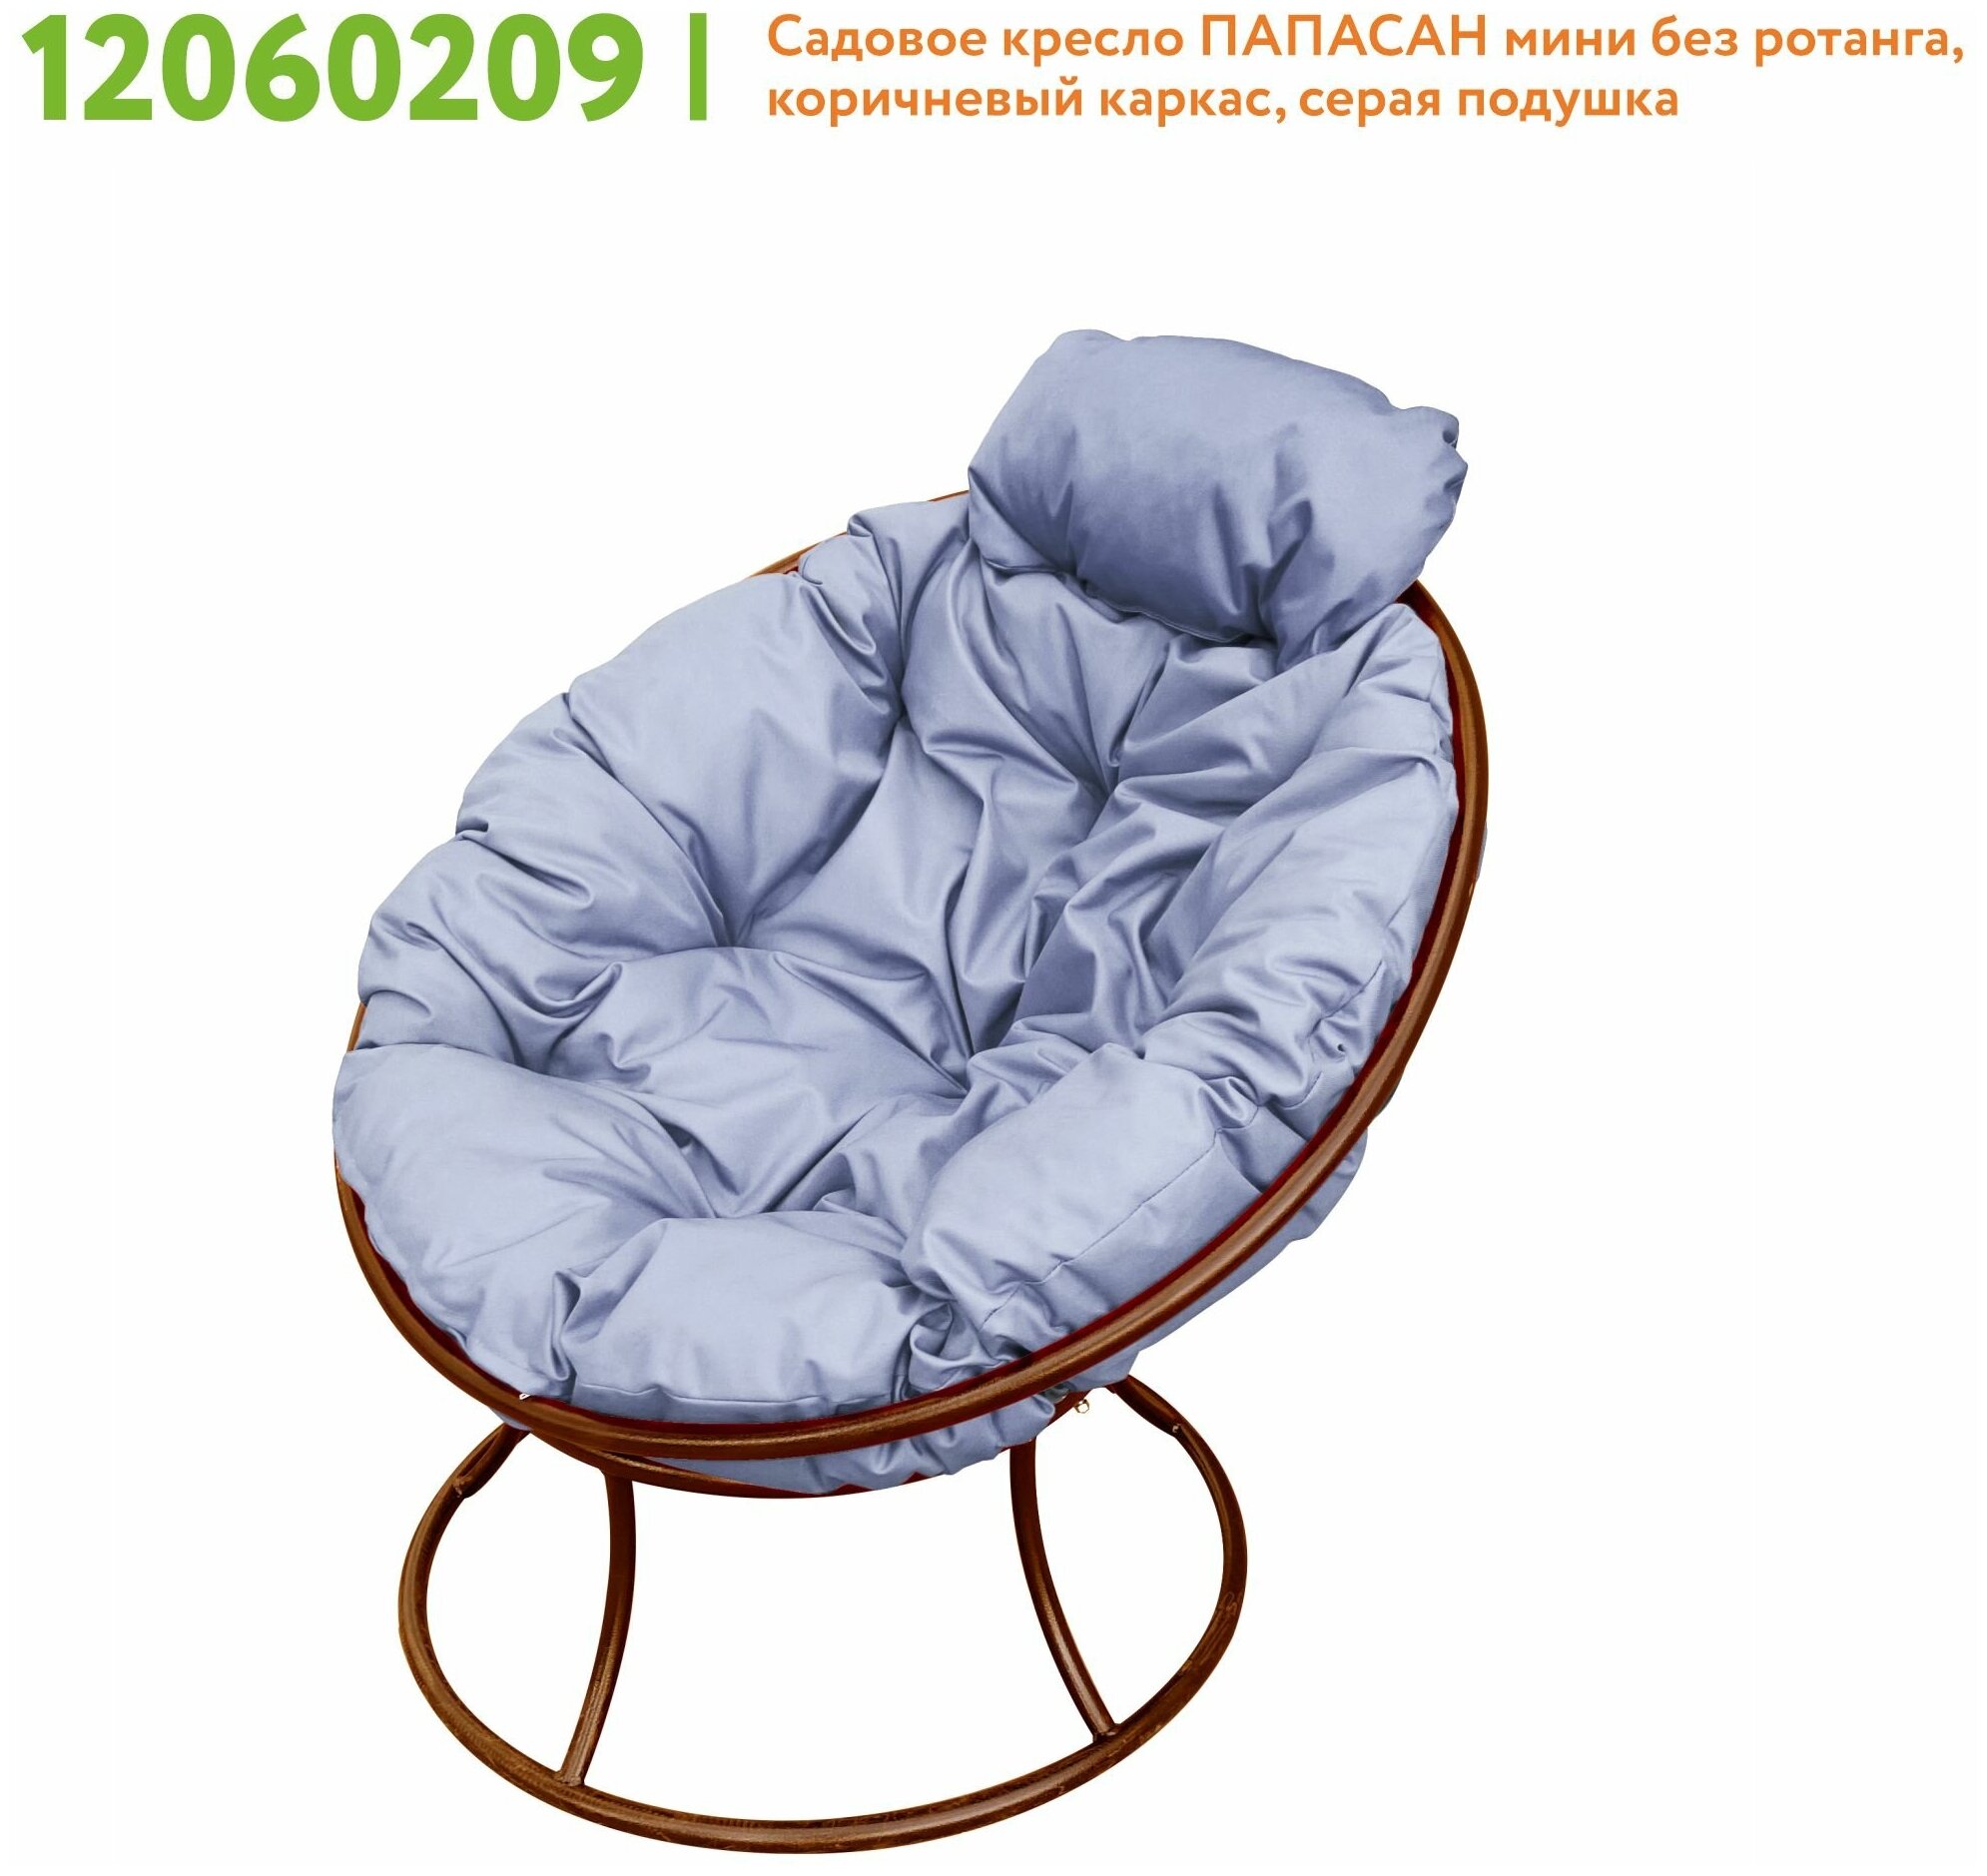 Кресло m-group папасан мини коричневое, серая подушка - фотография № 7